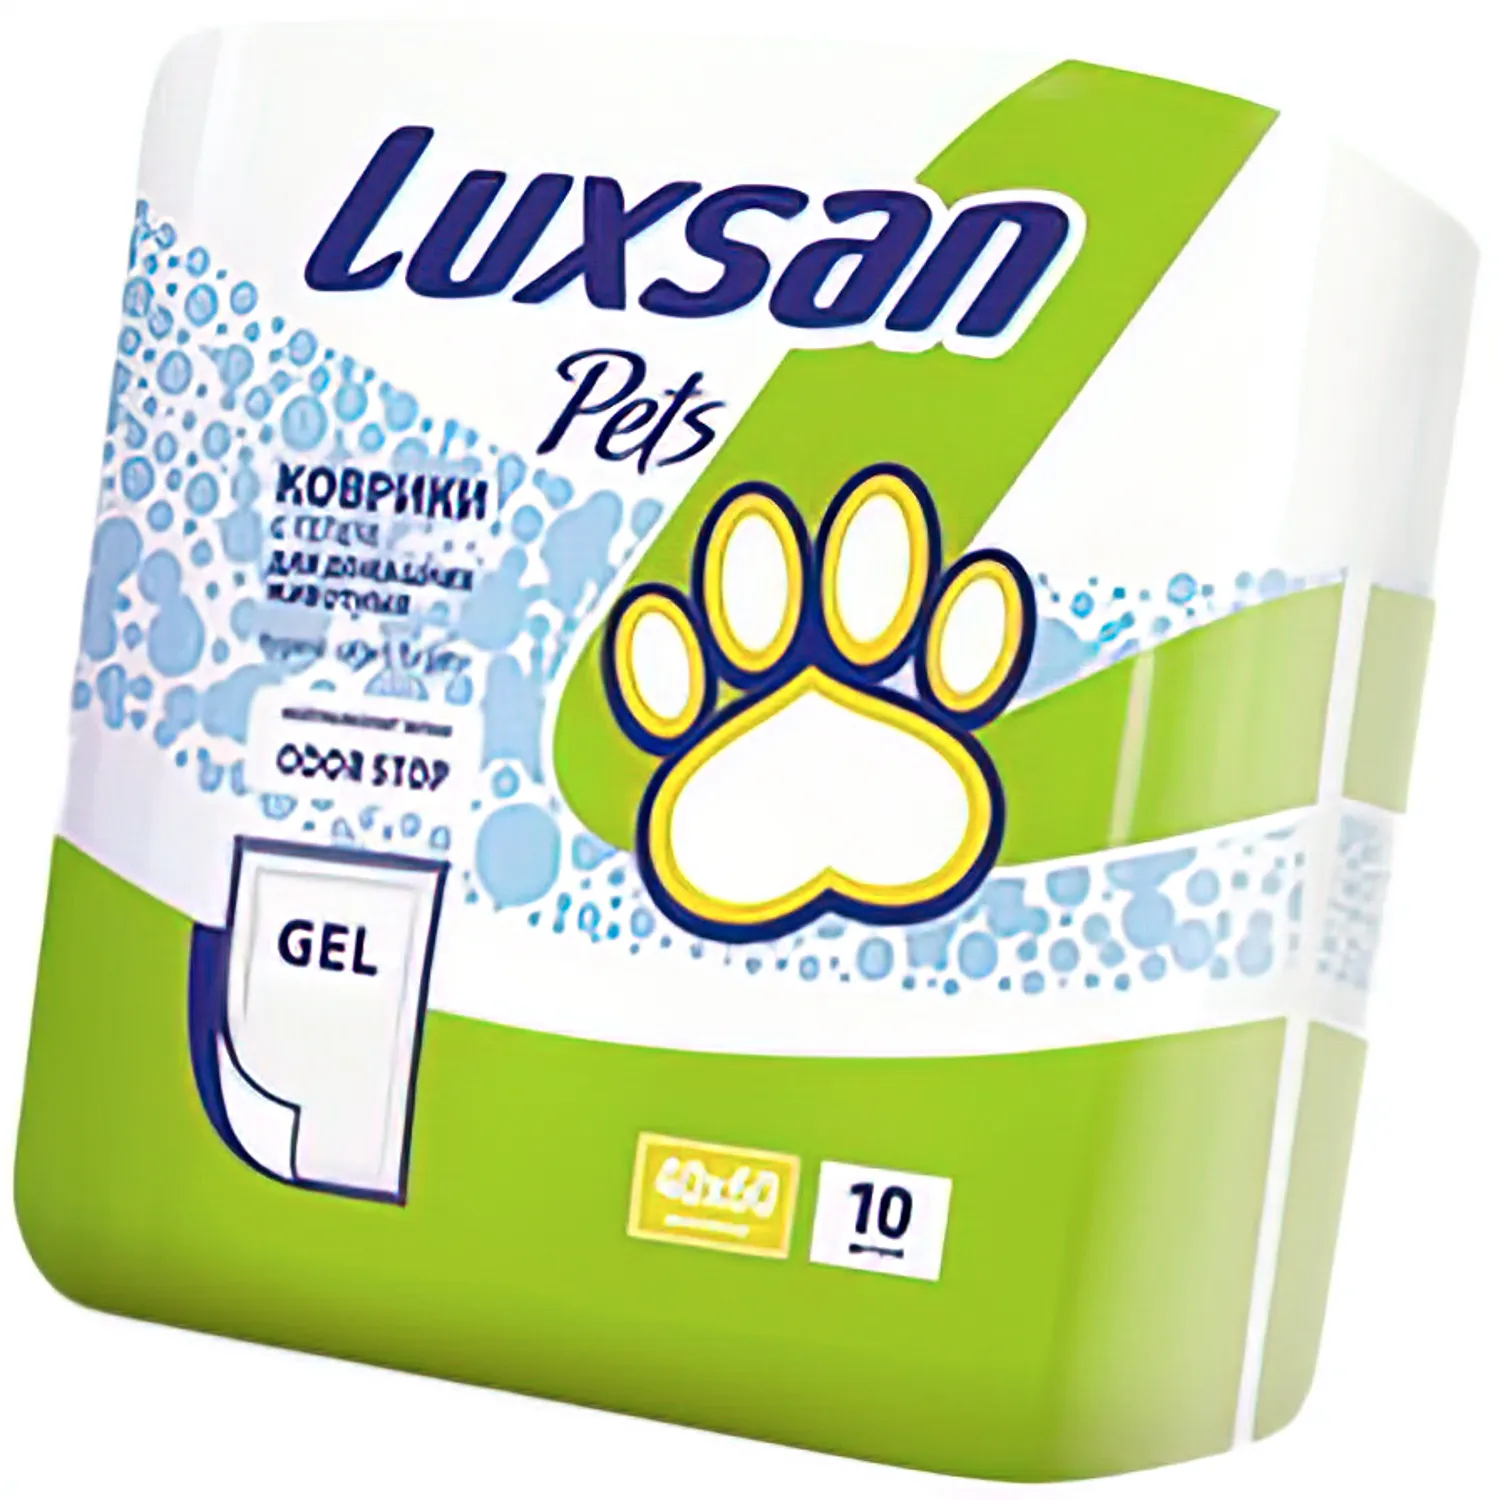 Коврики (пеленки) LUXSAN Premium GEL для животных 40х60, 10 шт